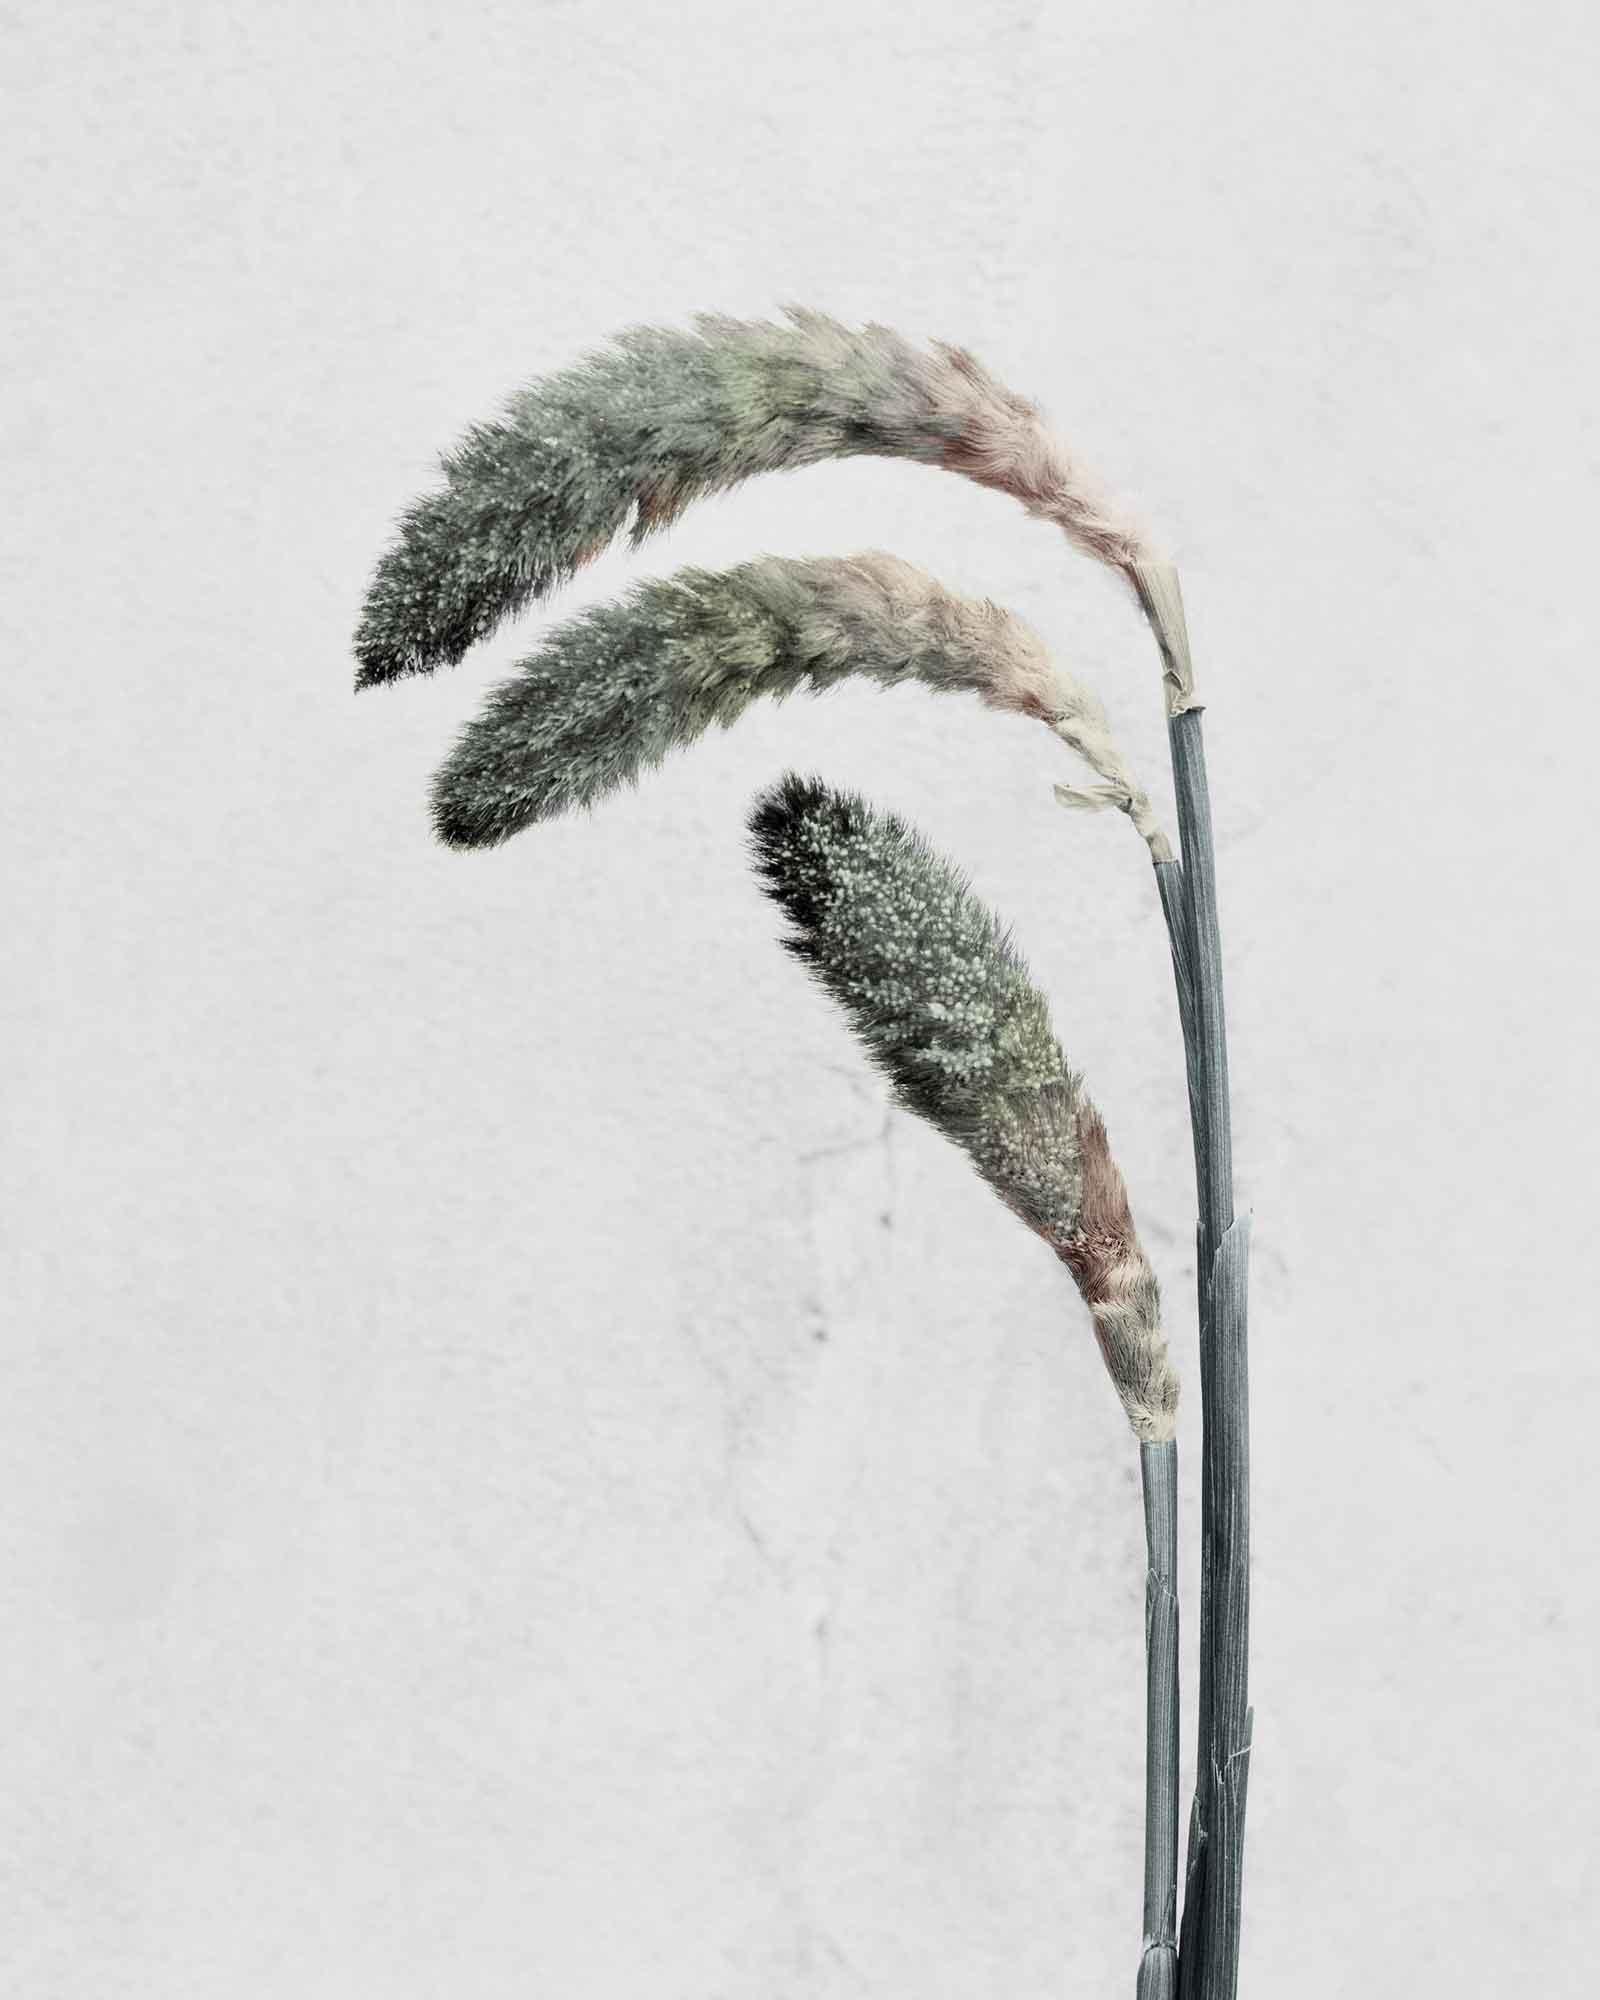 Vee Speers Still-Life Photograph - Botanica #22 (Pennisetum)